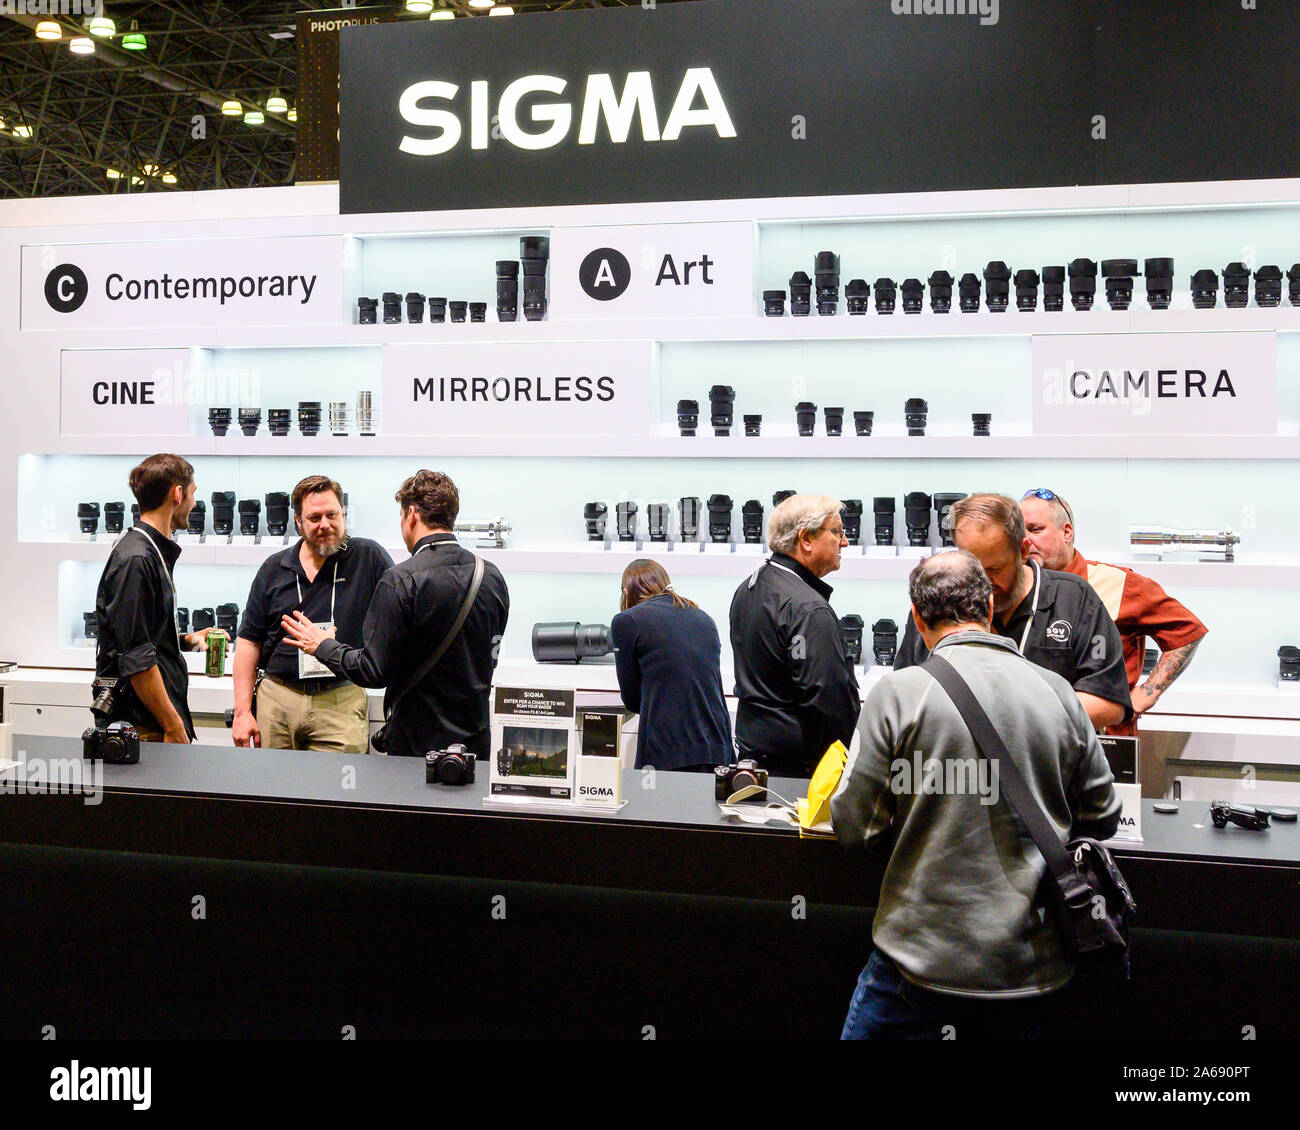 El stand de Sigma visto durante la PhotoPlus Expo, celebrada en el Centro de Convenciones Jacob K. Javits en Nueva York. Foto de stock